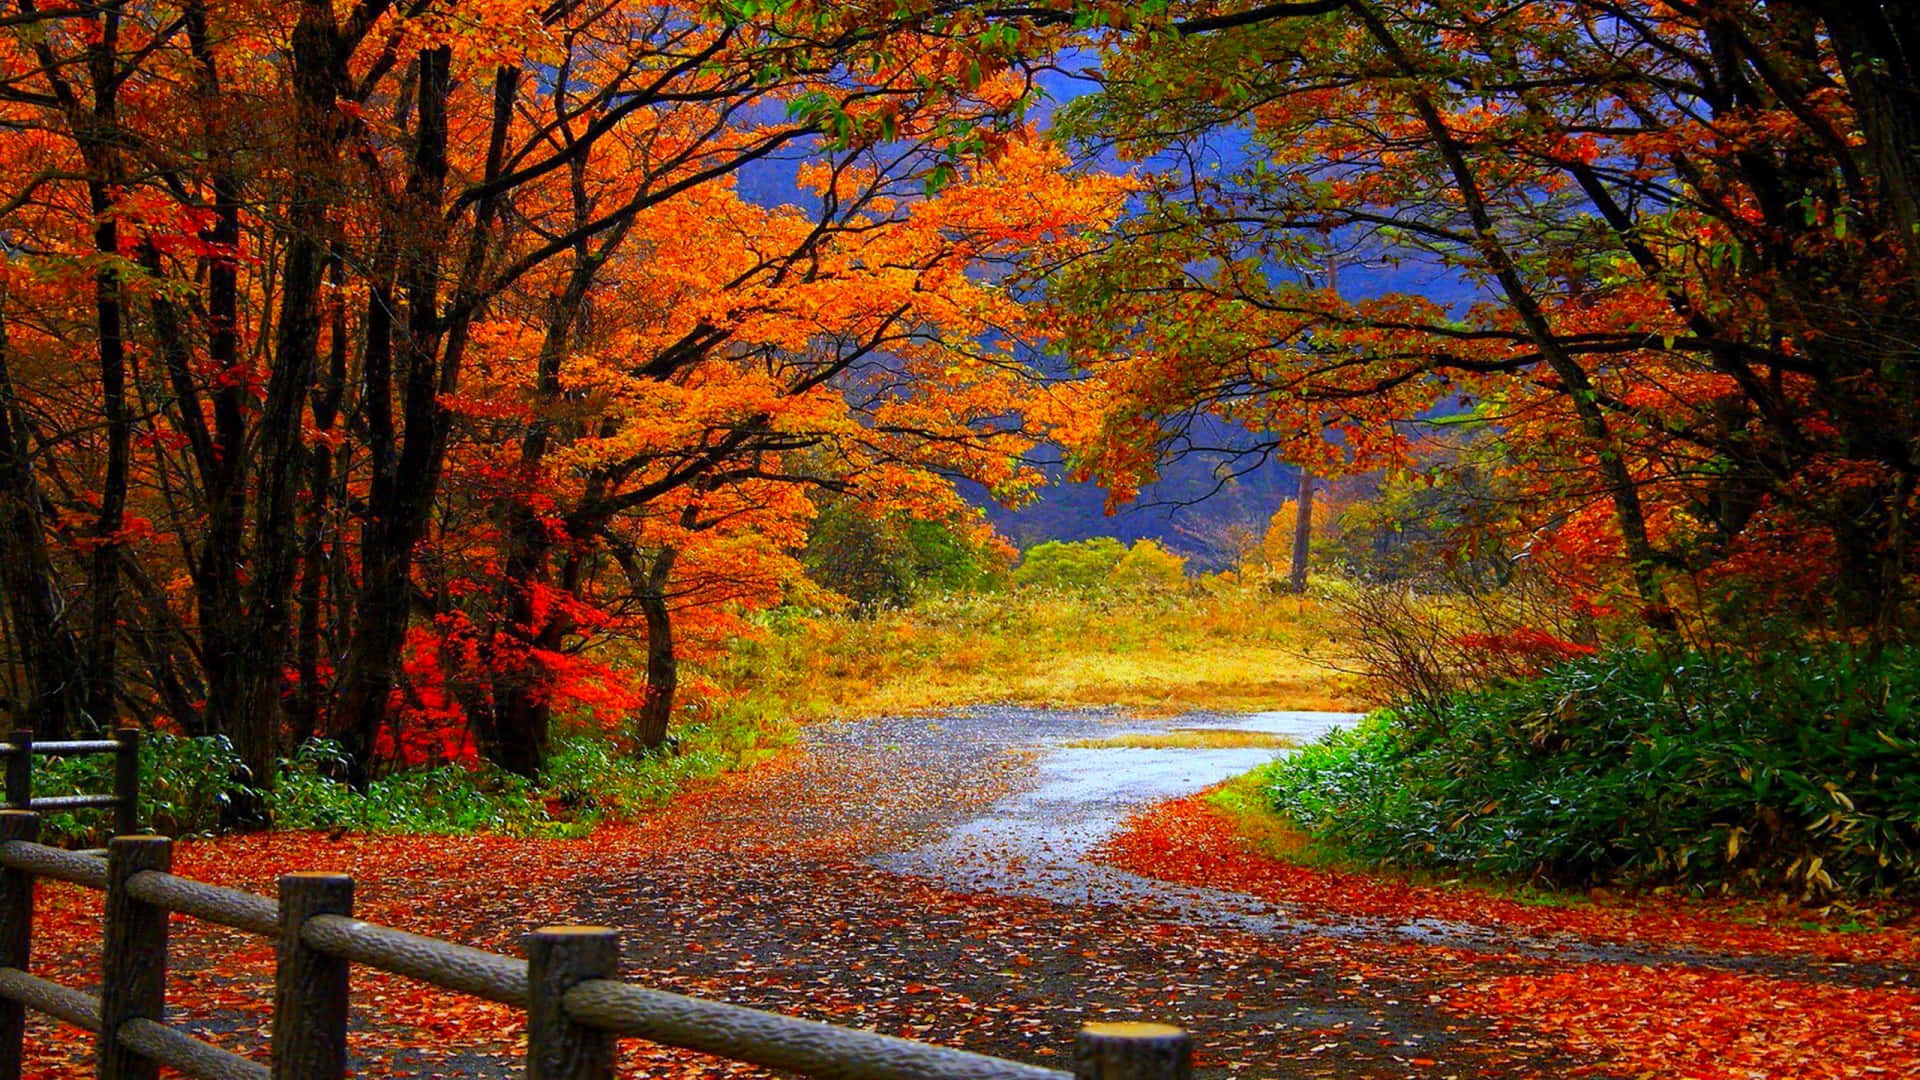 Stunning Fall Foliage Scenery